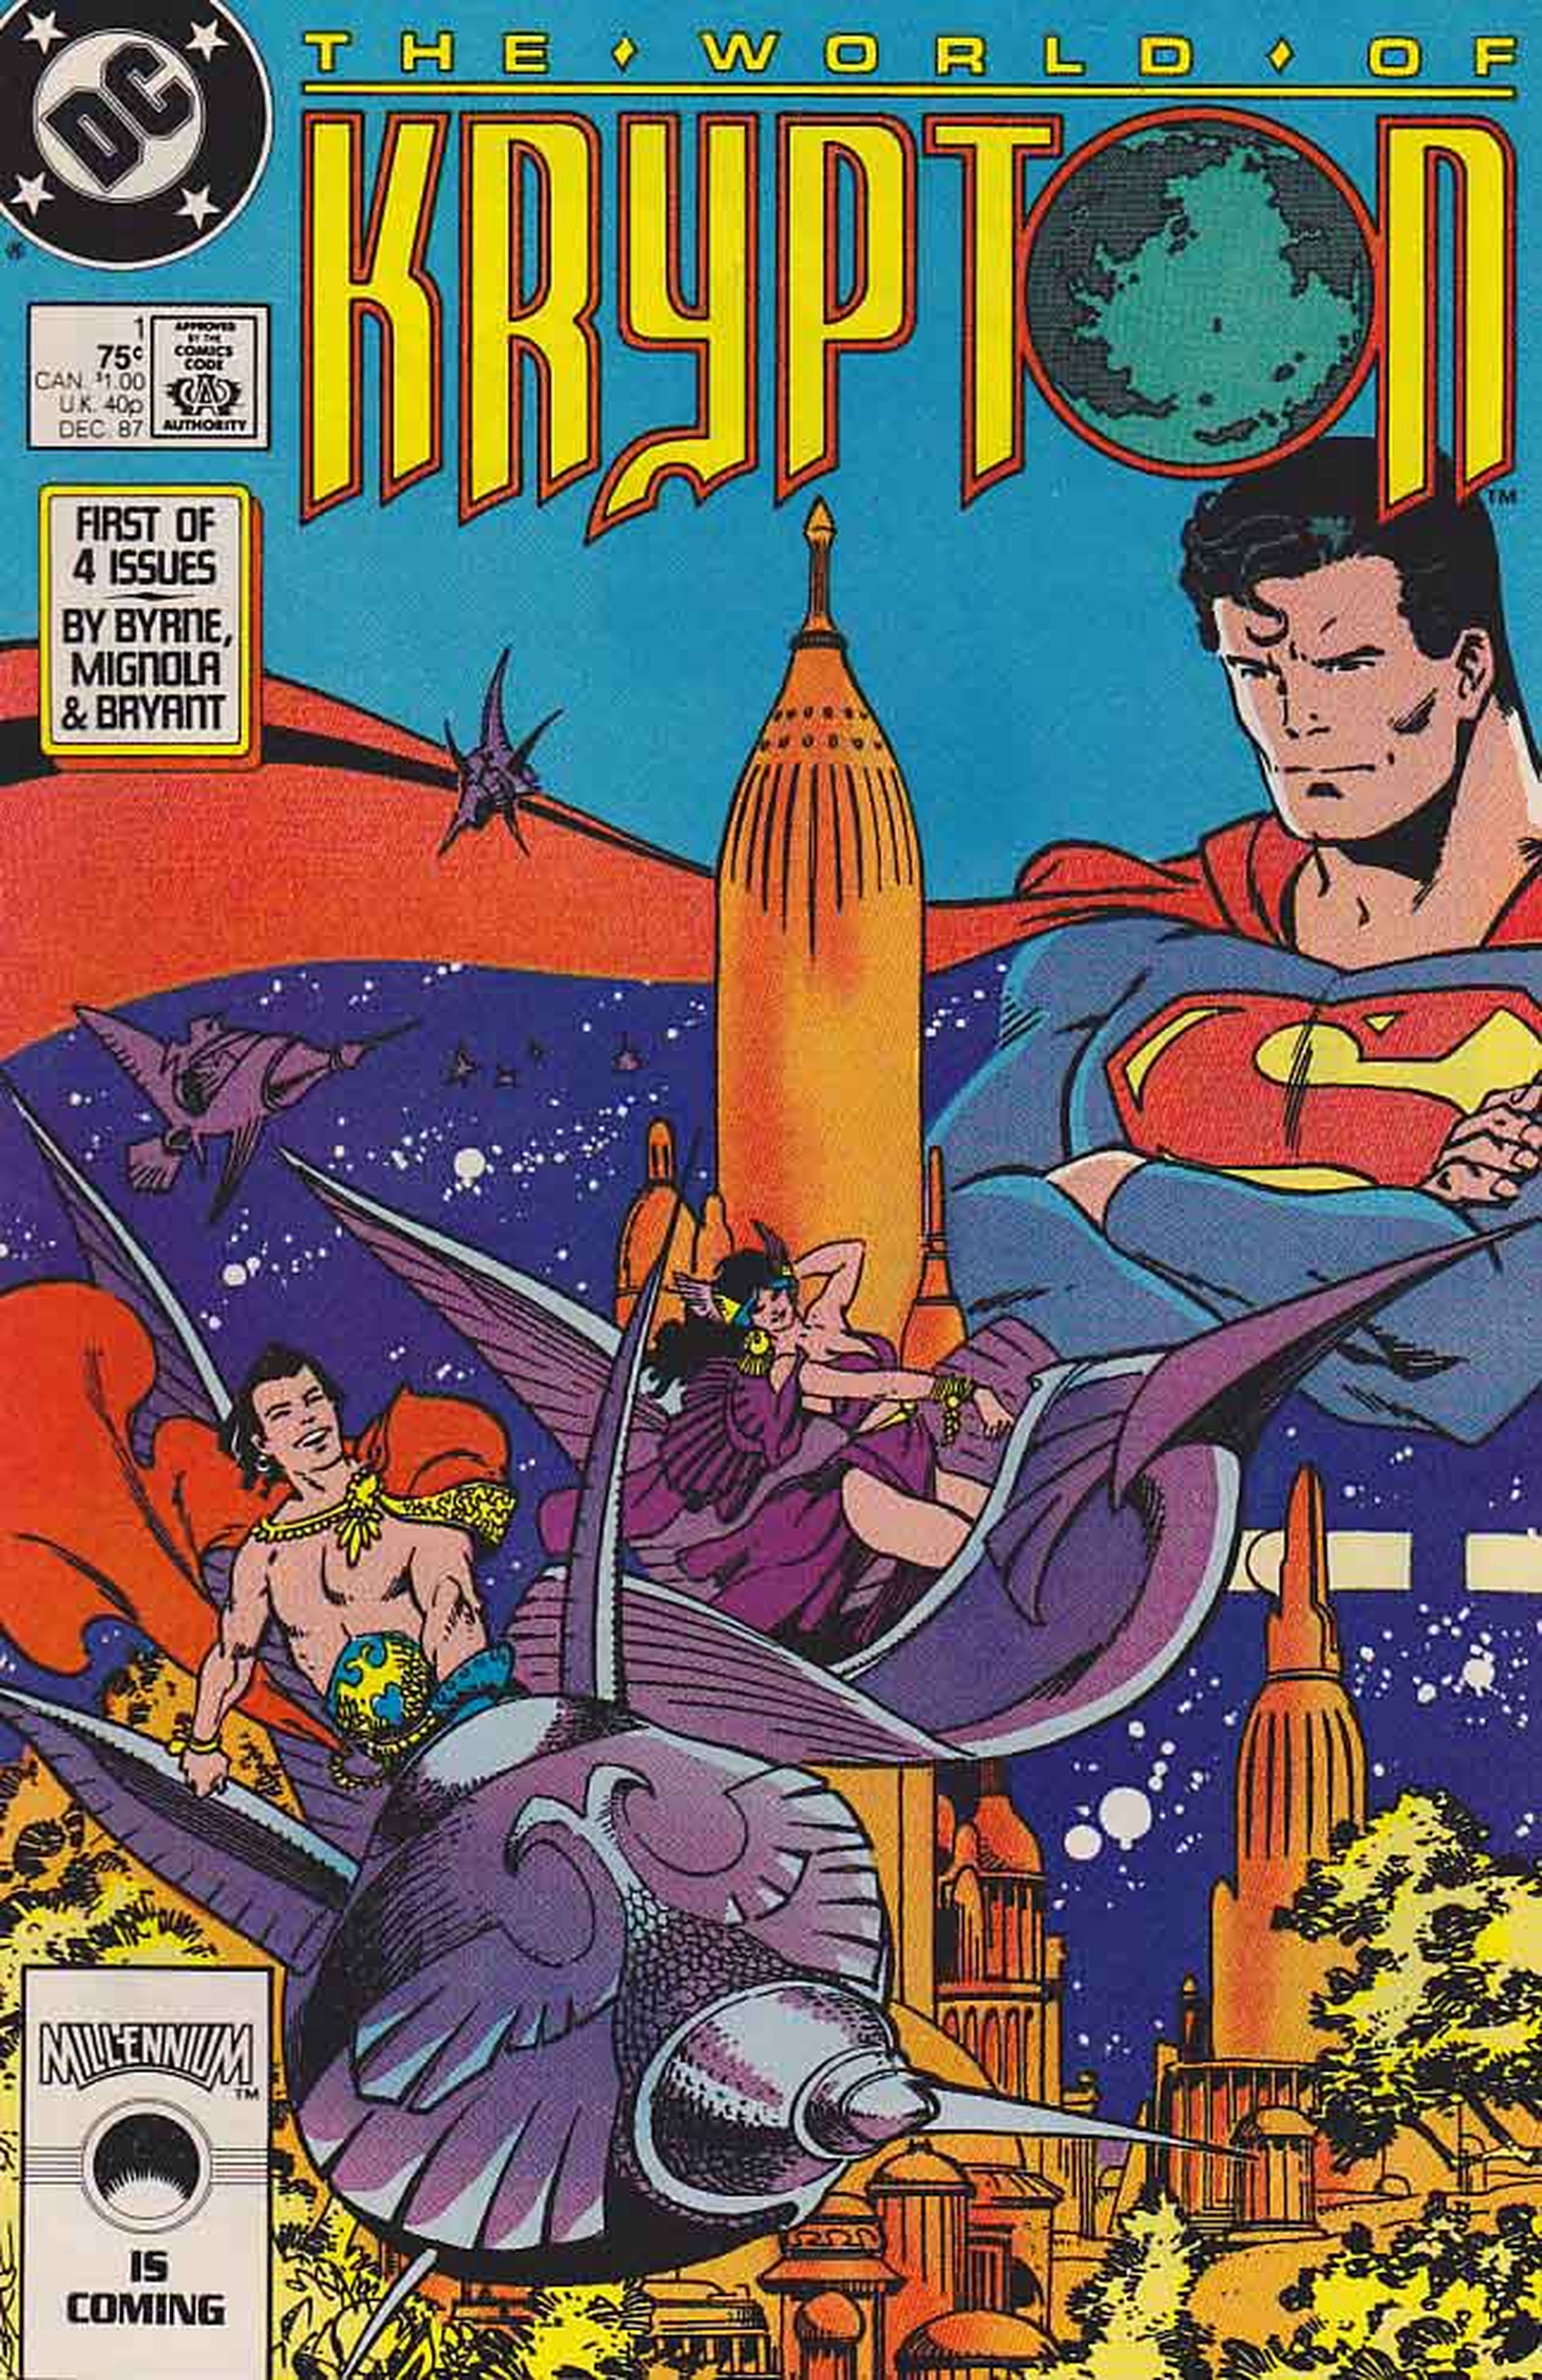 El planeta de Superman, Krypton, podría tener su propia serie televisiva